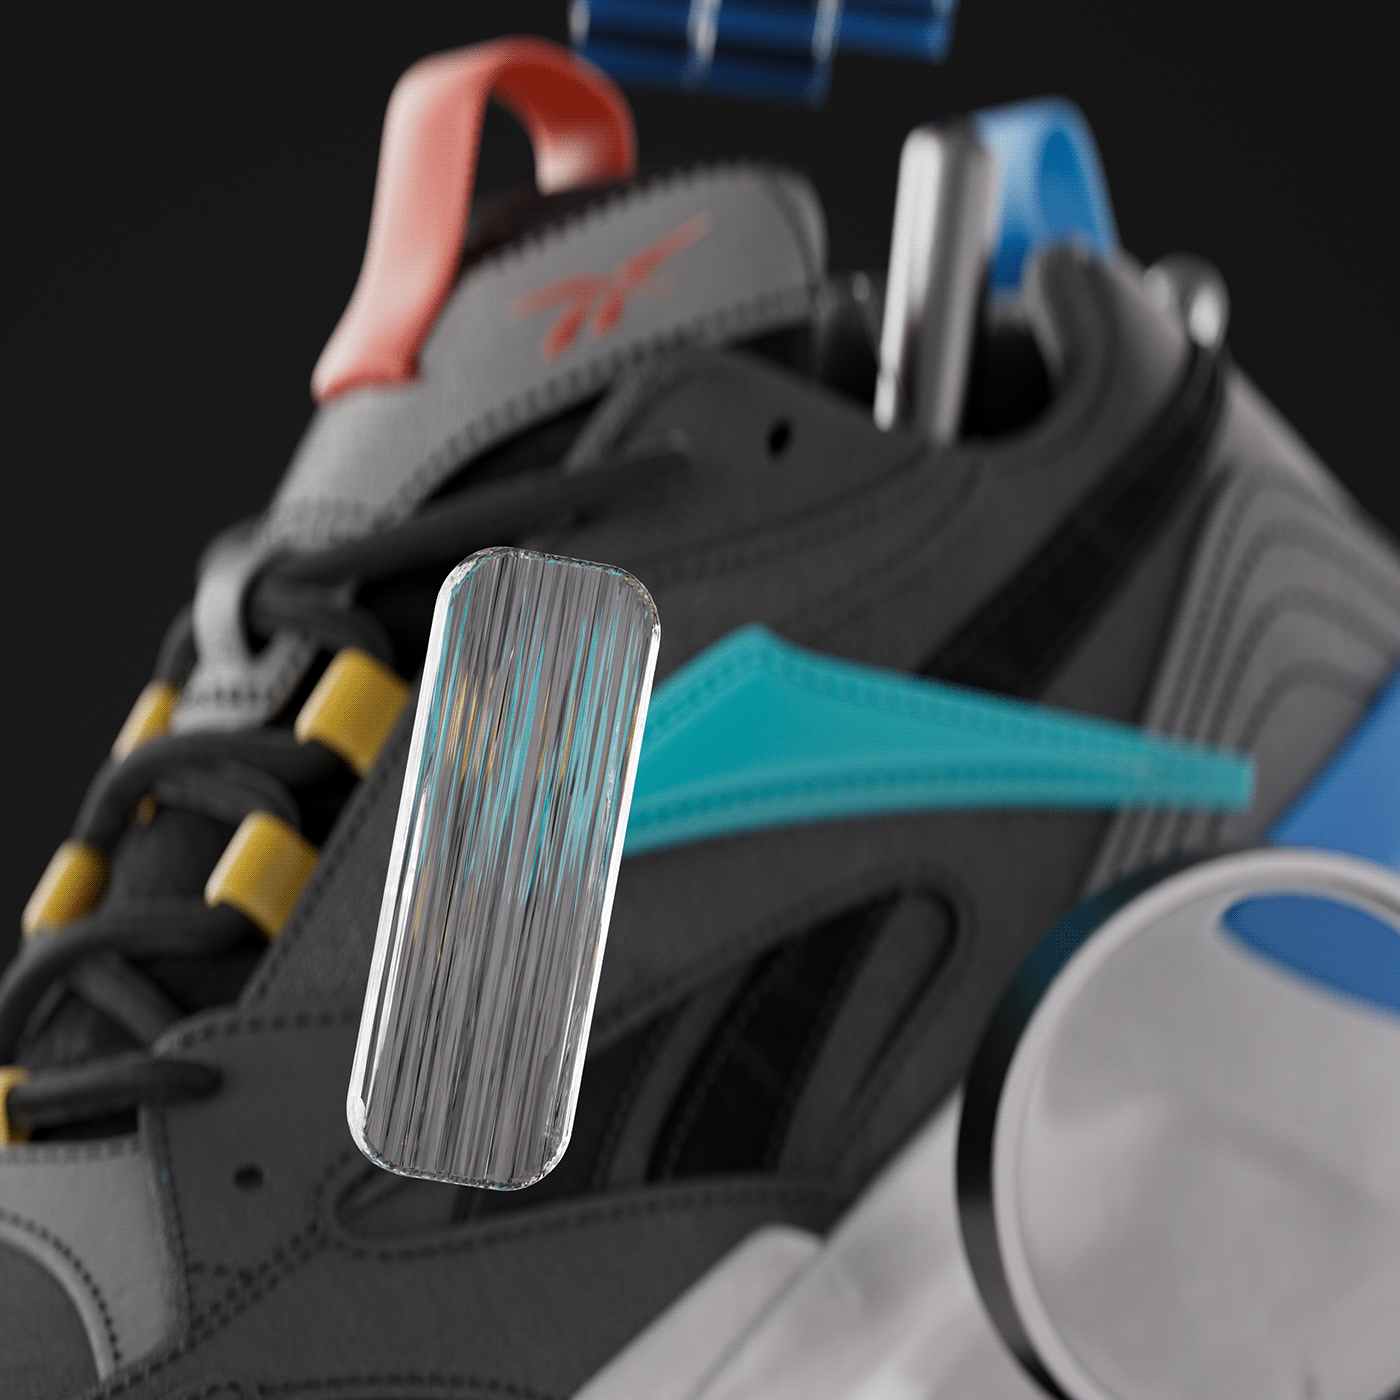 c4d CGI Render 3D shoes Nike sneakers footwear concept artwork